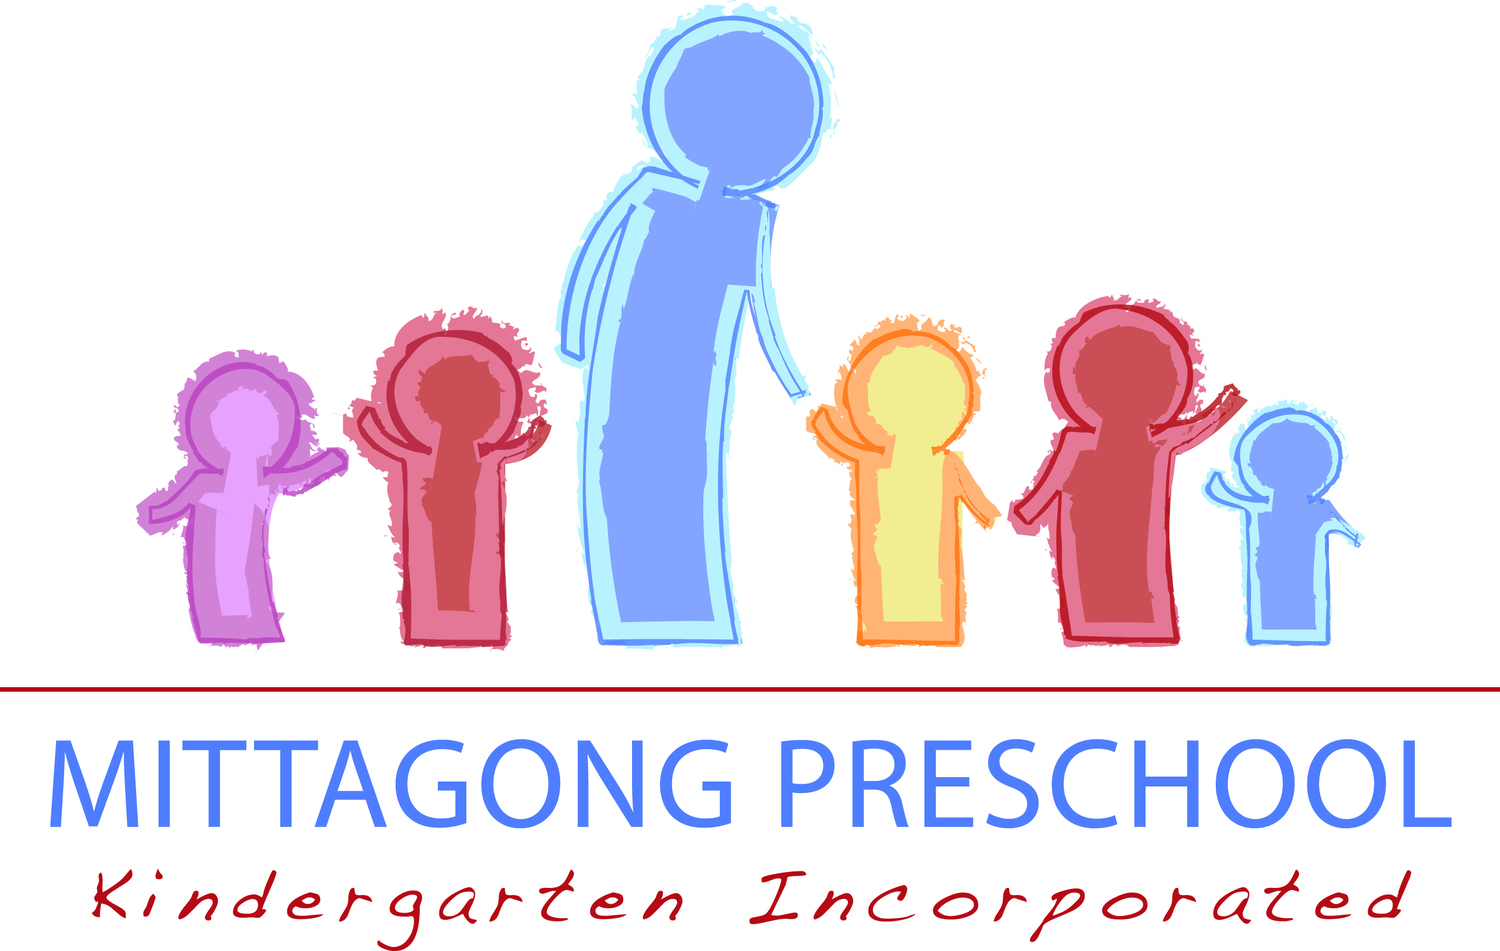 Mittagong Preschool